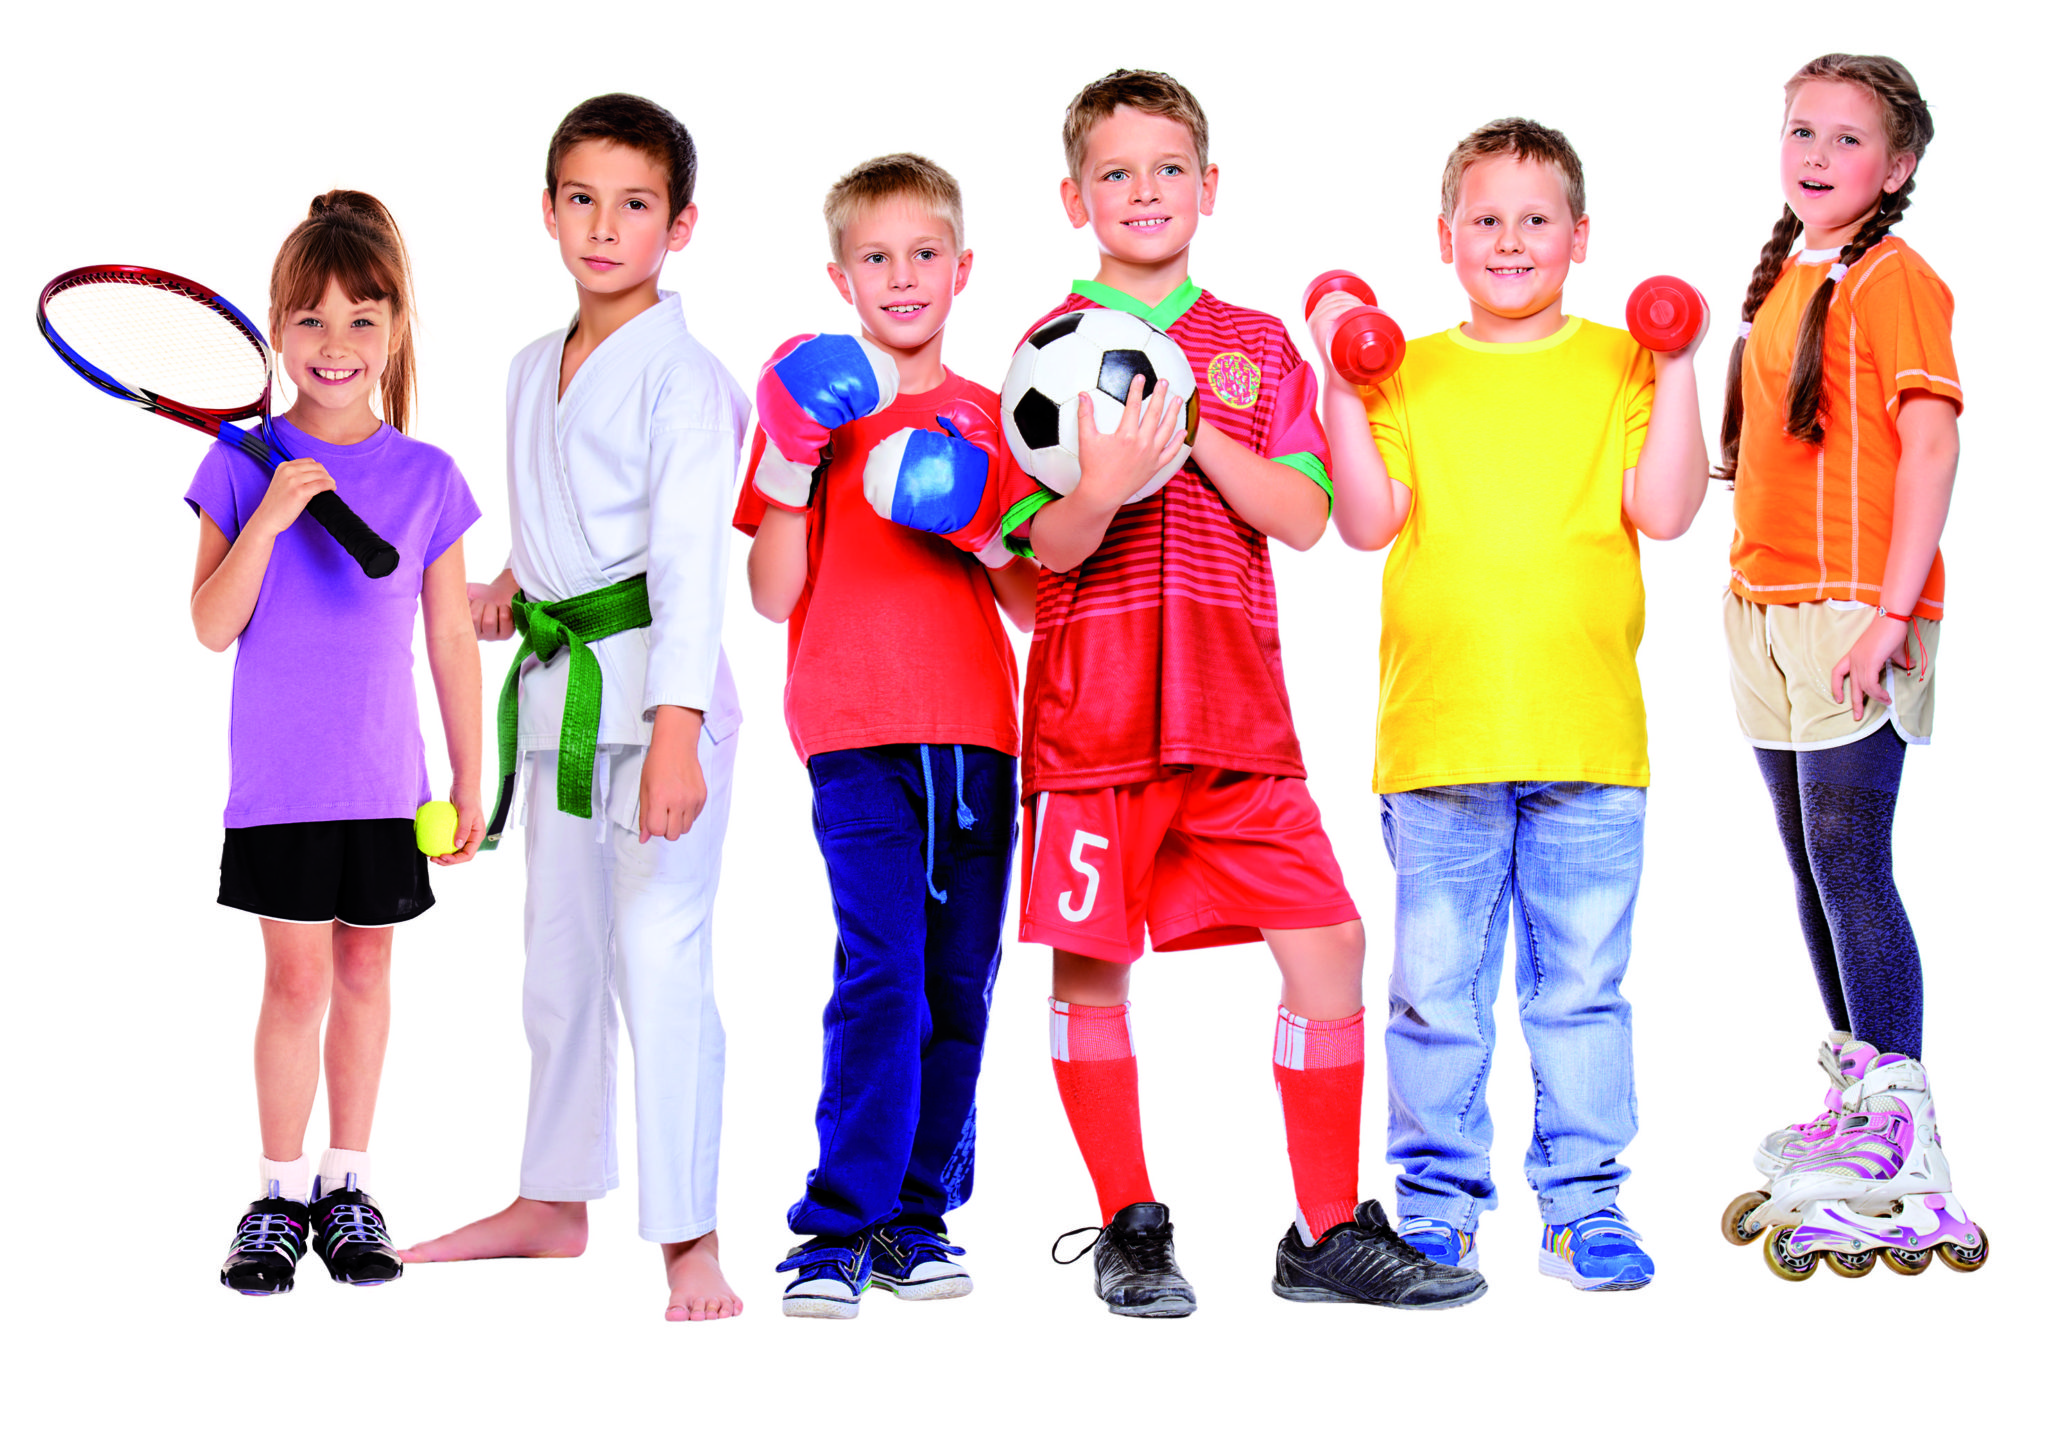 Спорт для ребенка – сложный выбор